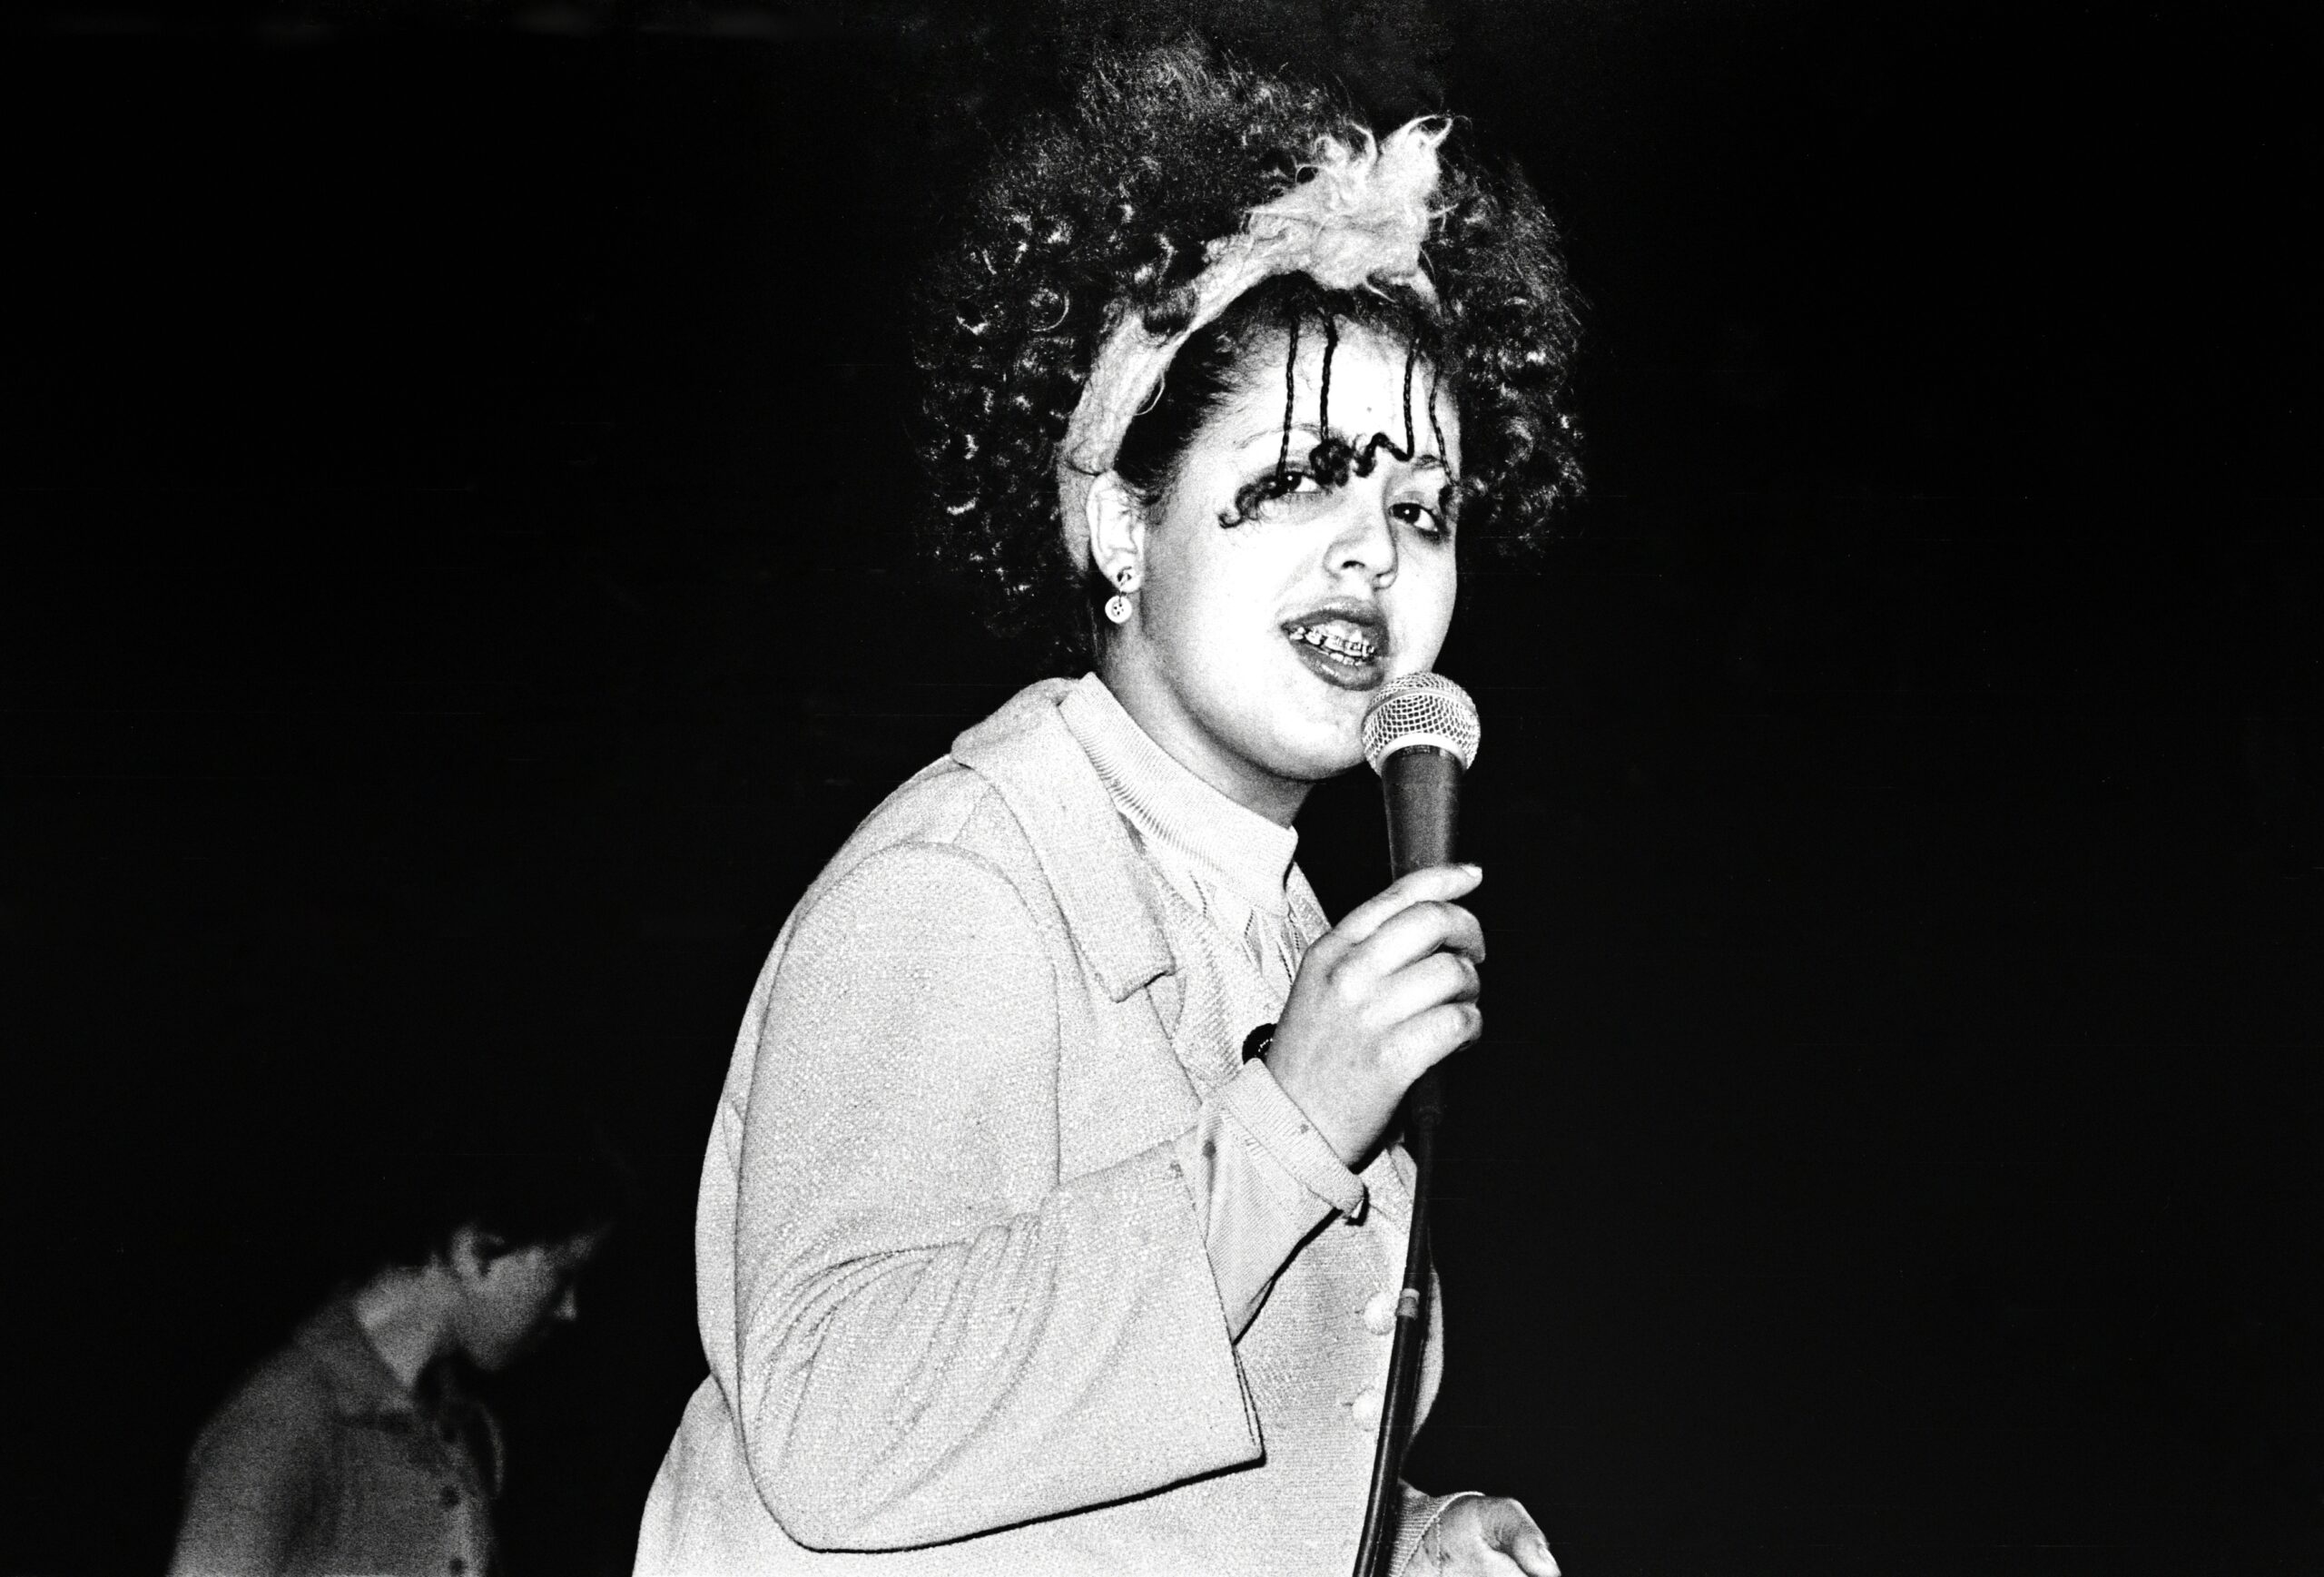 Poly Styrene live, 1978